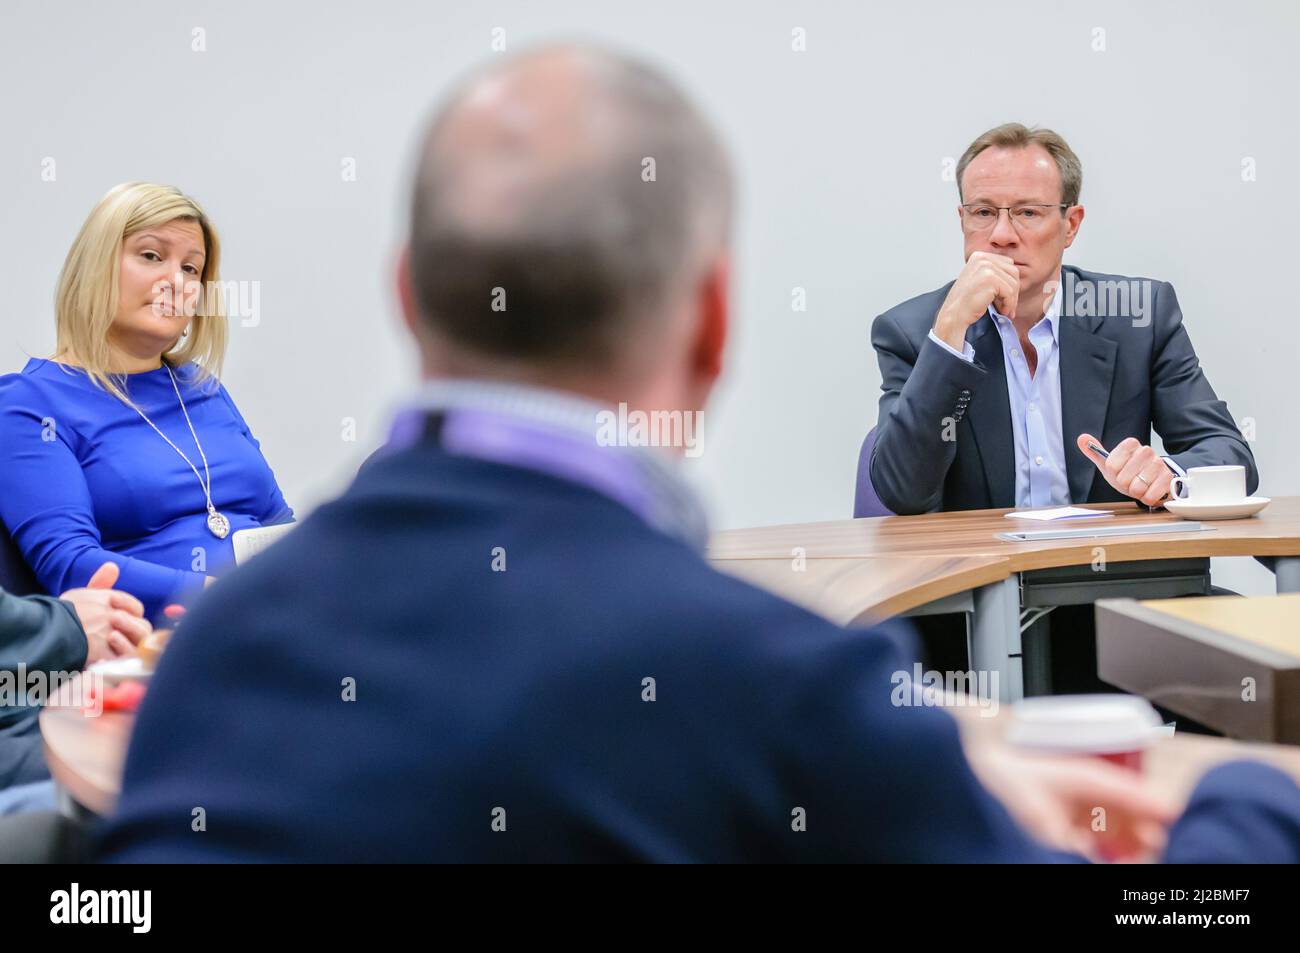 Philip Jansen preside una reunión durante su visita a Belfast, 28/02/2019 Foto de stock